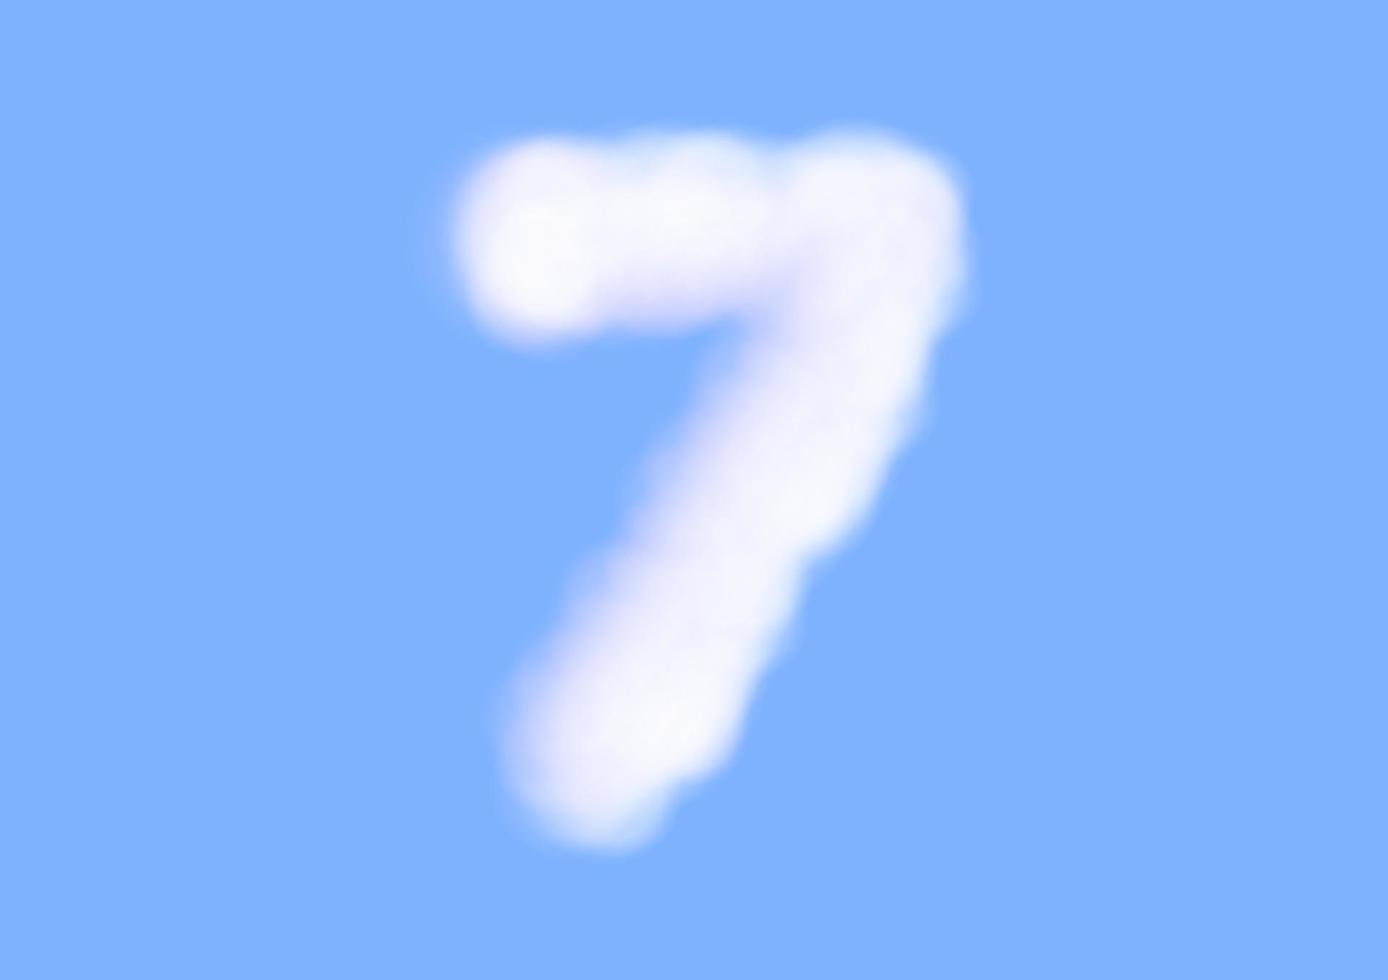 nummer sju teckensnitt form i moln vektor på blå himmel bakgrund